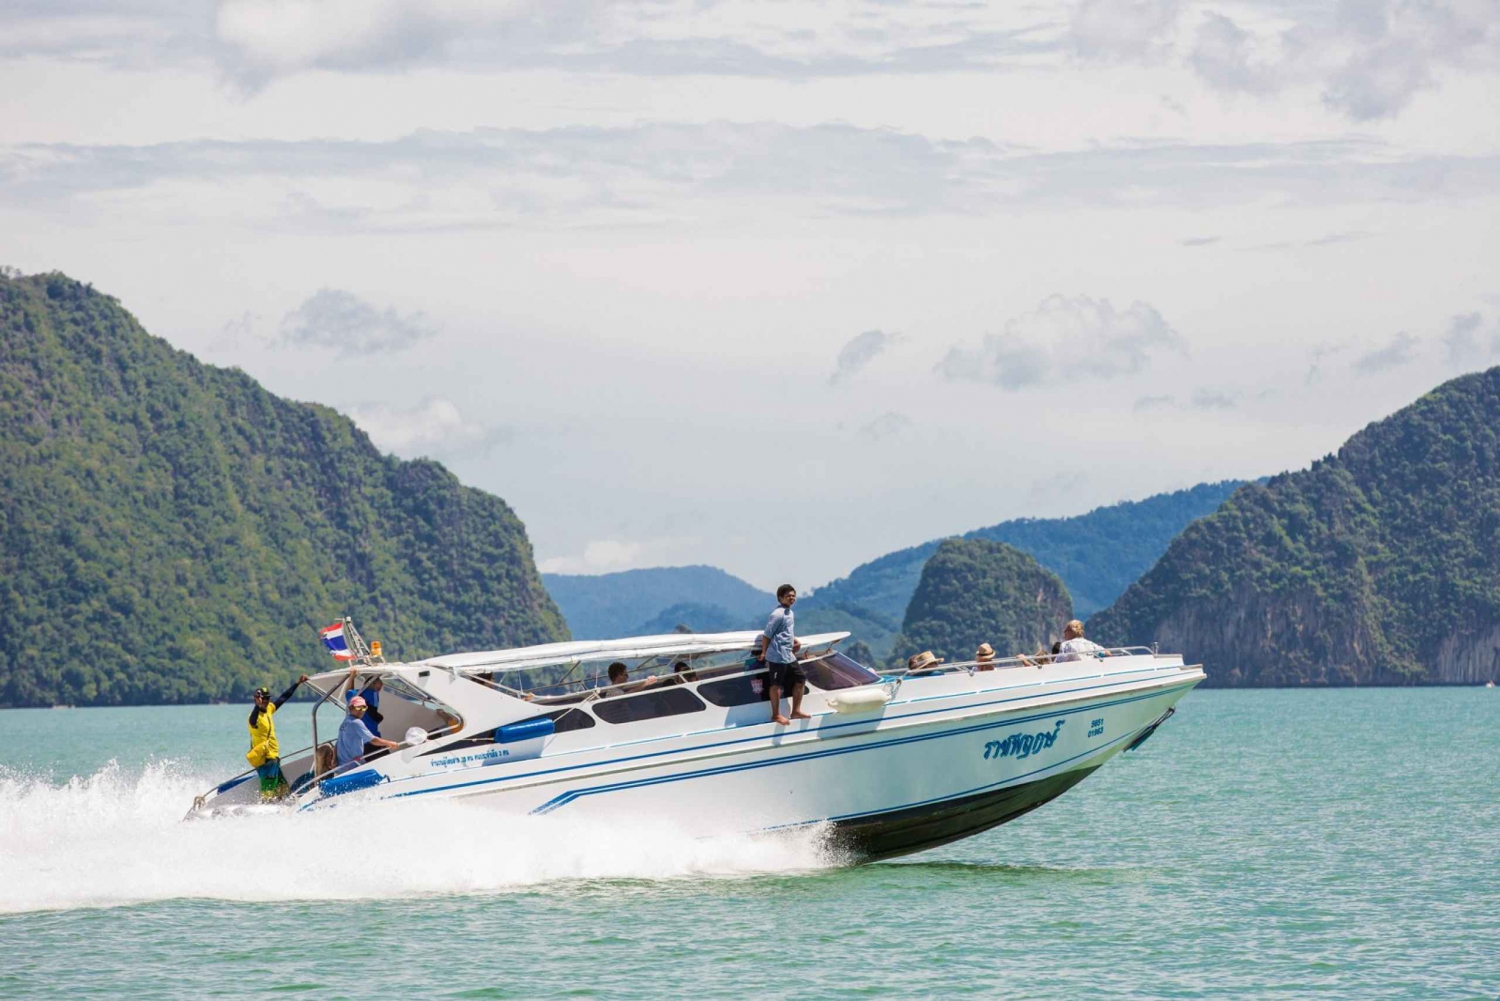 Phang Nga Bay: James Bond Island Kajak och Snorkling Tour